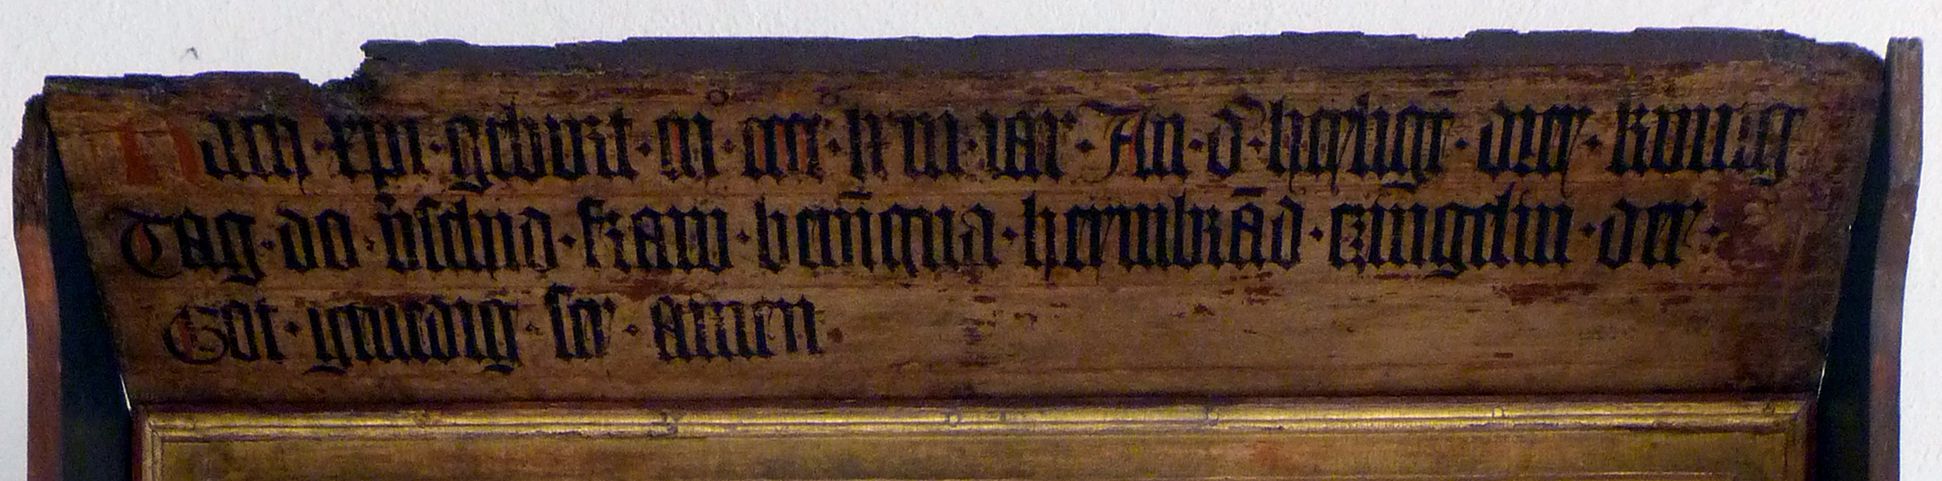 Epitaph der Benigna Zingel, geborene Holzschuher Vordach mit Inschrift